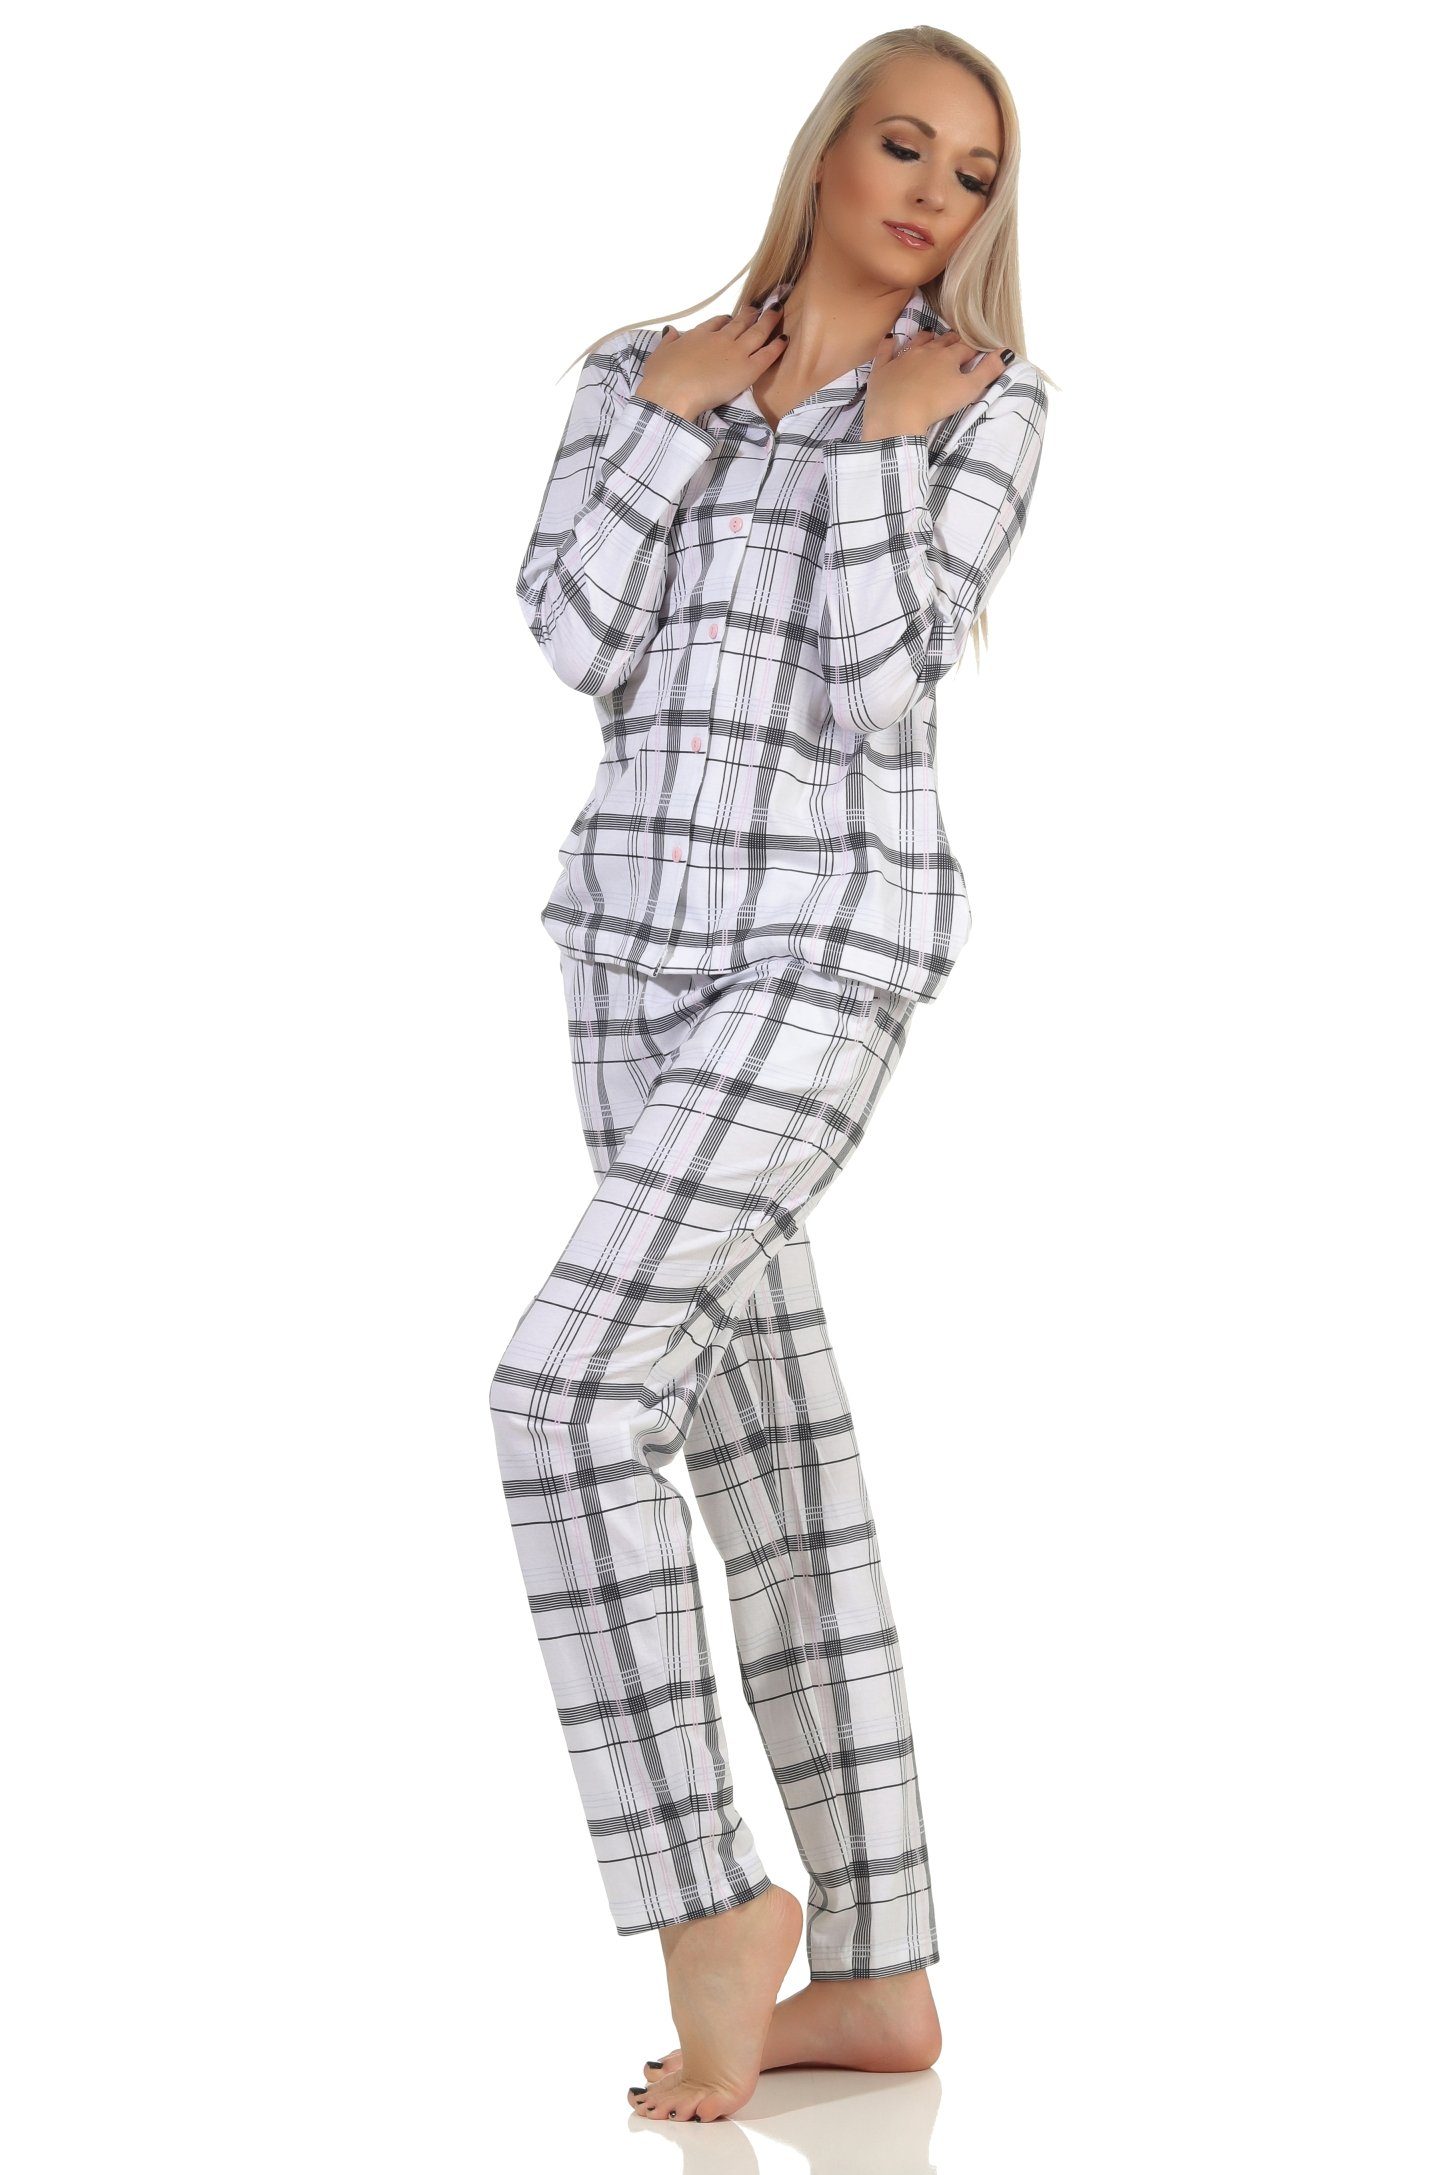 Jersey Karo Optik in durchknöpfen Normann Qualität Schlafanzug Damen Pyjama in zum